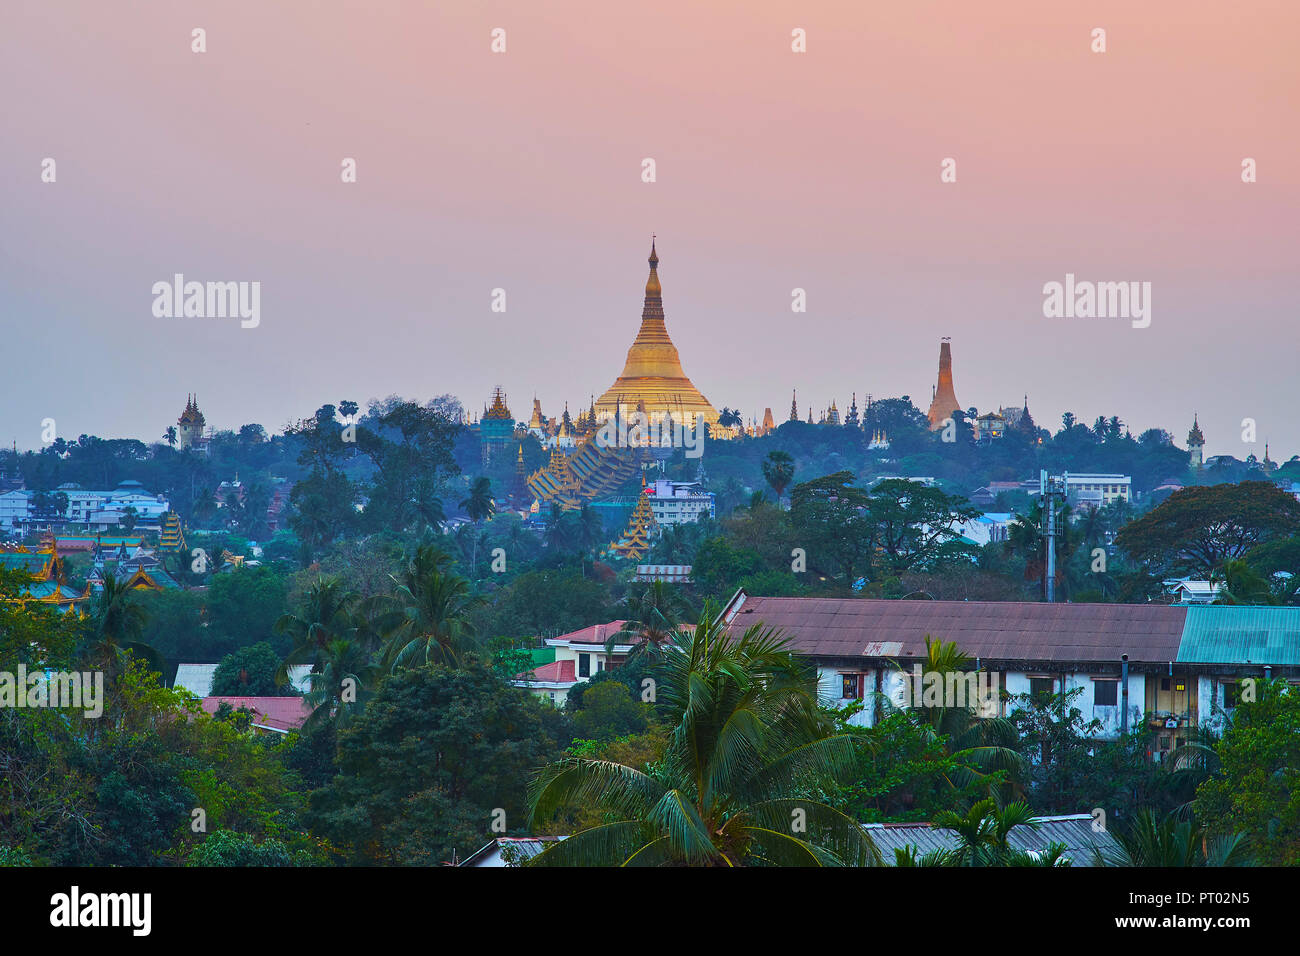 Die grüne Singuttara Hügel mit hoch aufragenden Shwedagon Pagode und Silhouetten von kleineren Stupas in dim Twilight, Yangon, Myanmar. Stockfoto